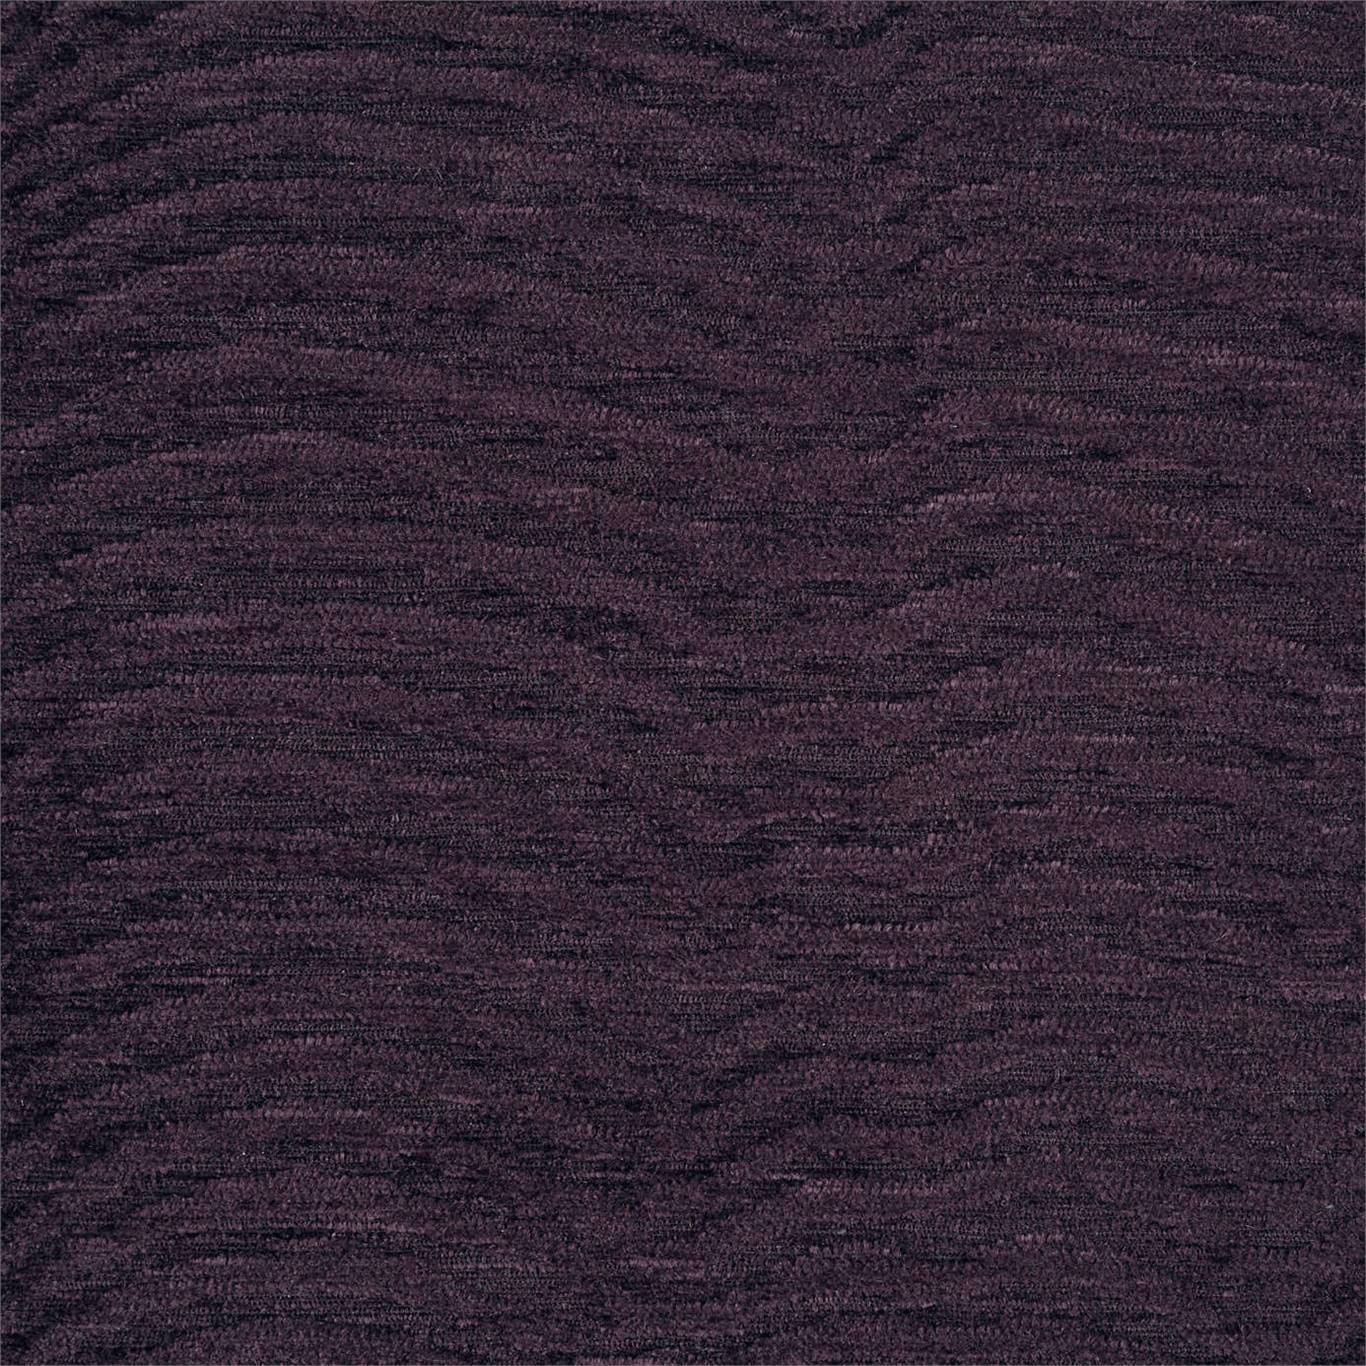 Waltz Plum Fabric by HAR